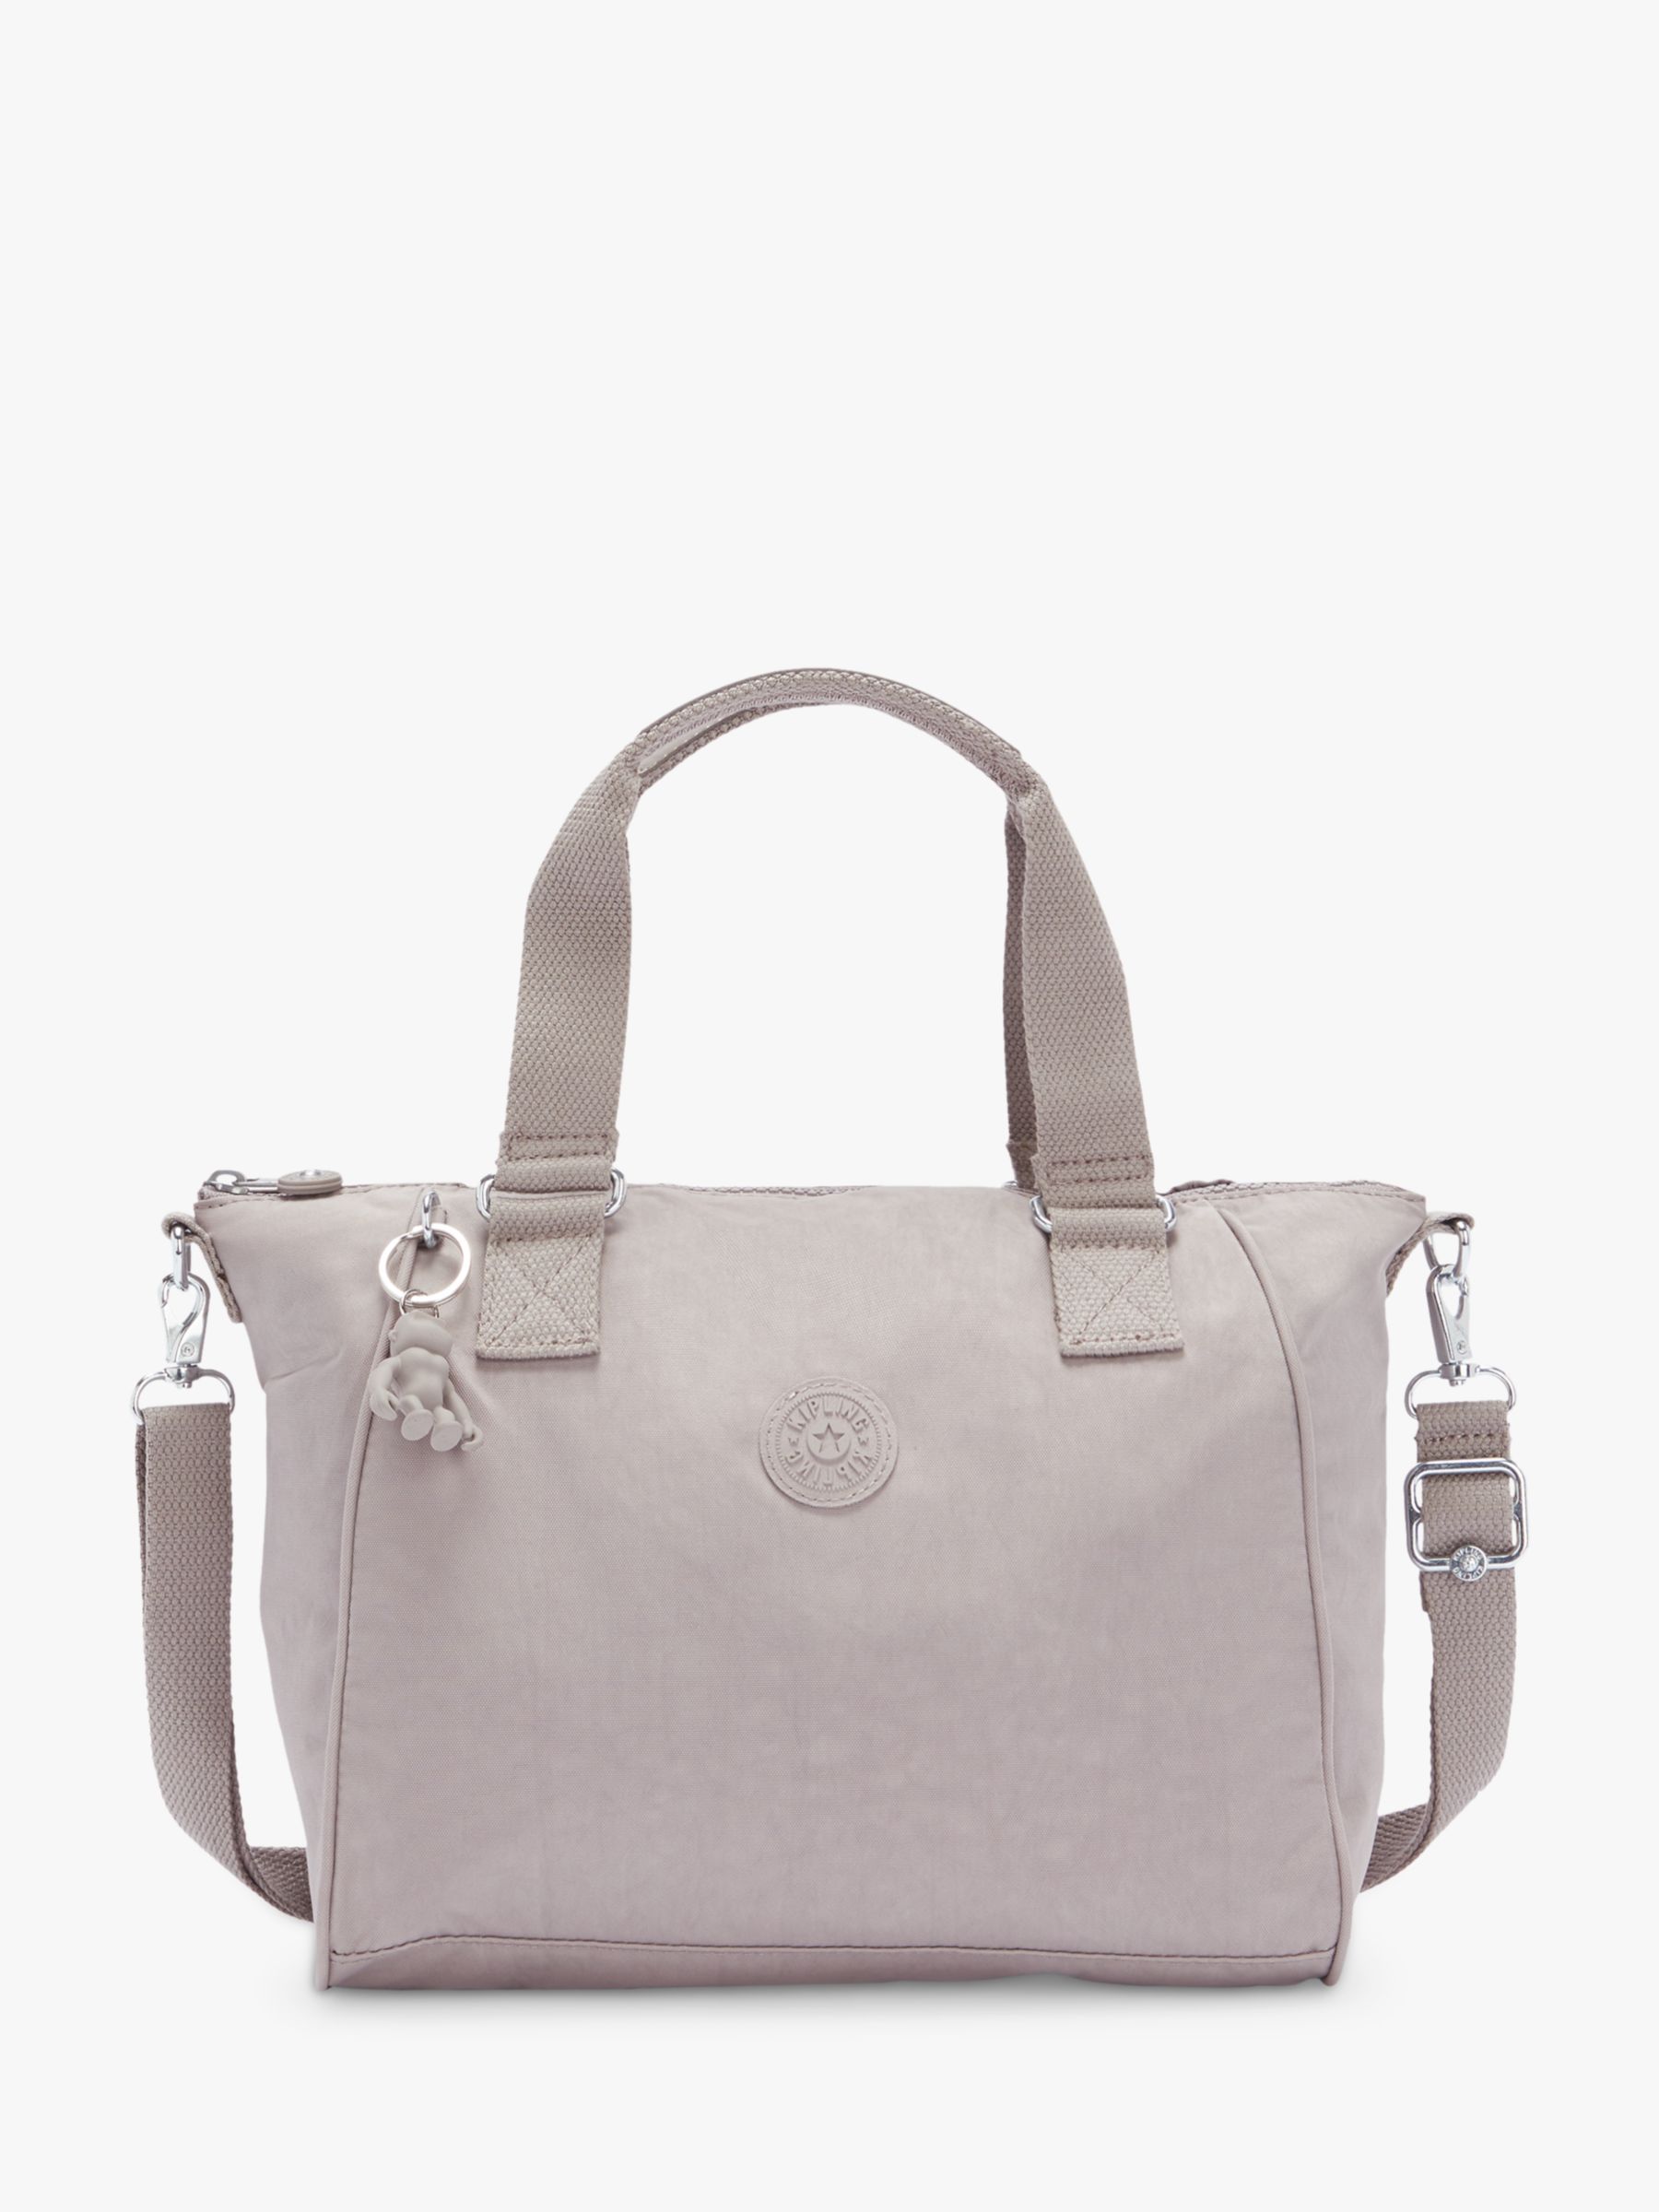 Kipling Amiel Medium Grab Bag, Grey at John Lewis & Partners